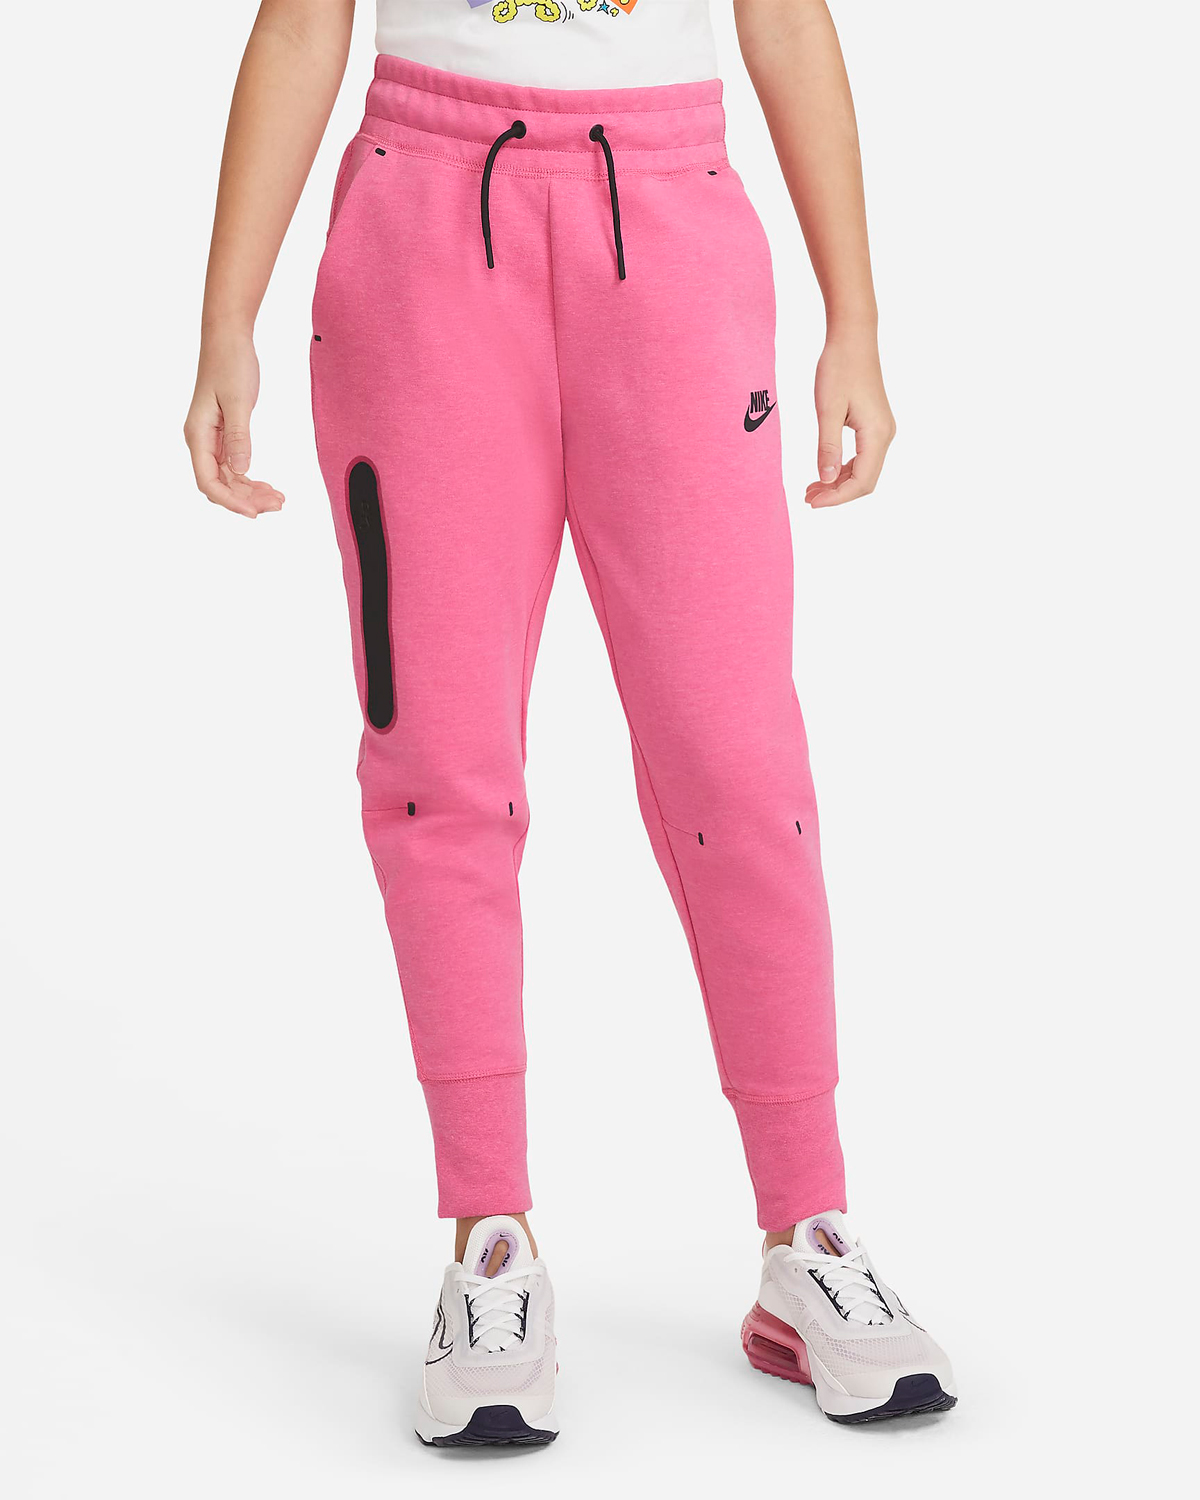 nike-womens-pinksicle-tech-fleece-pants